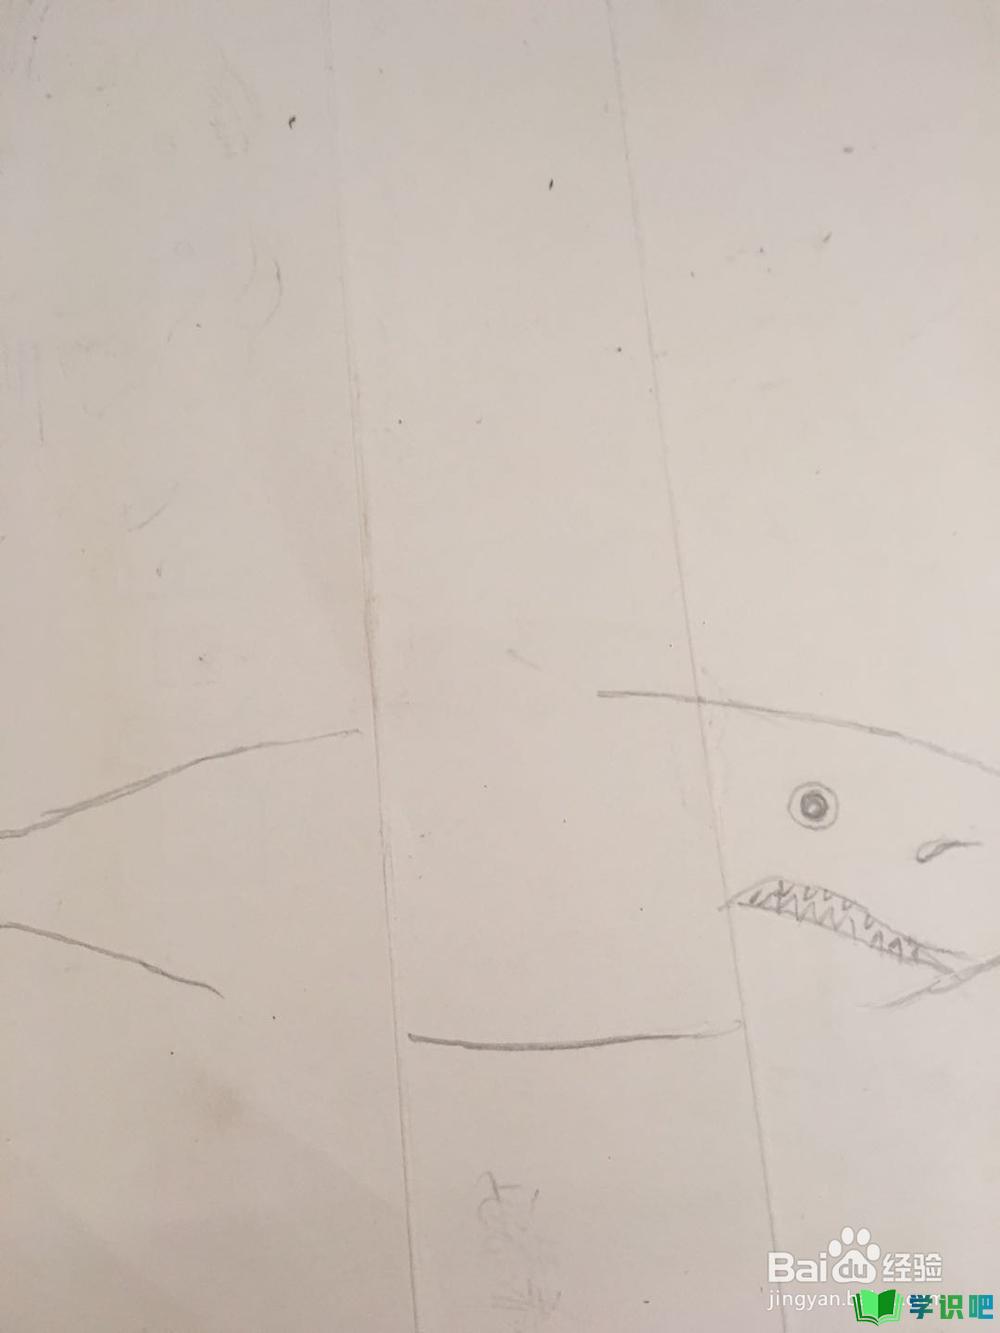 鲨鱼的简笔画怎么画？ 第4张